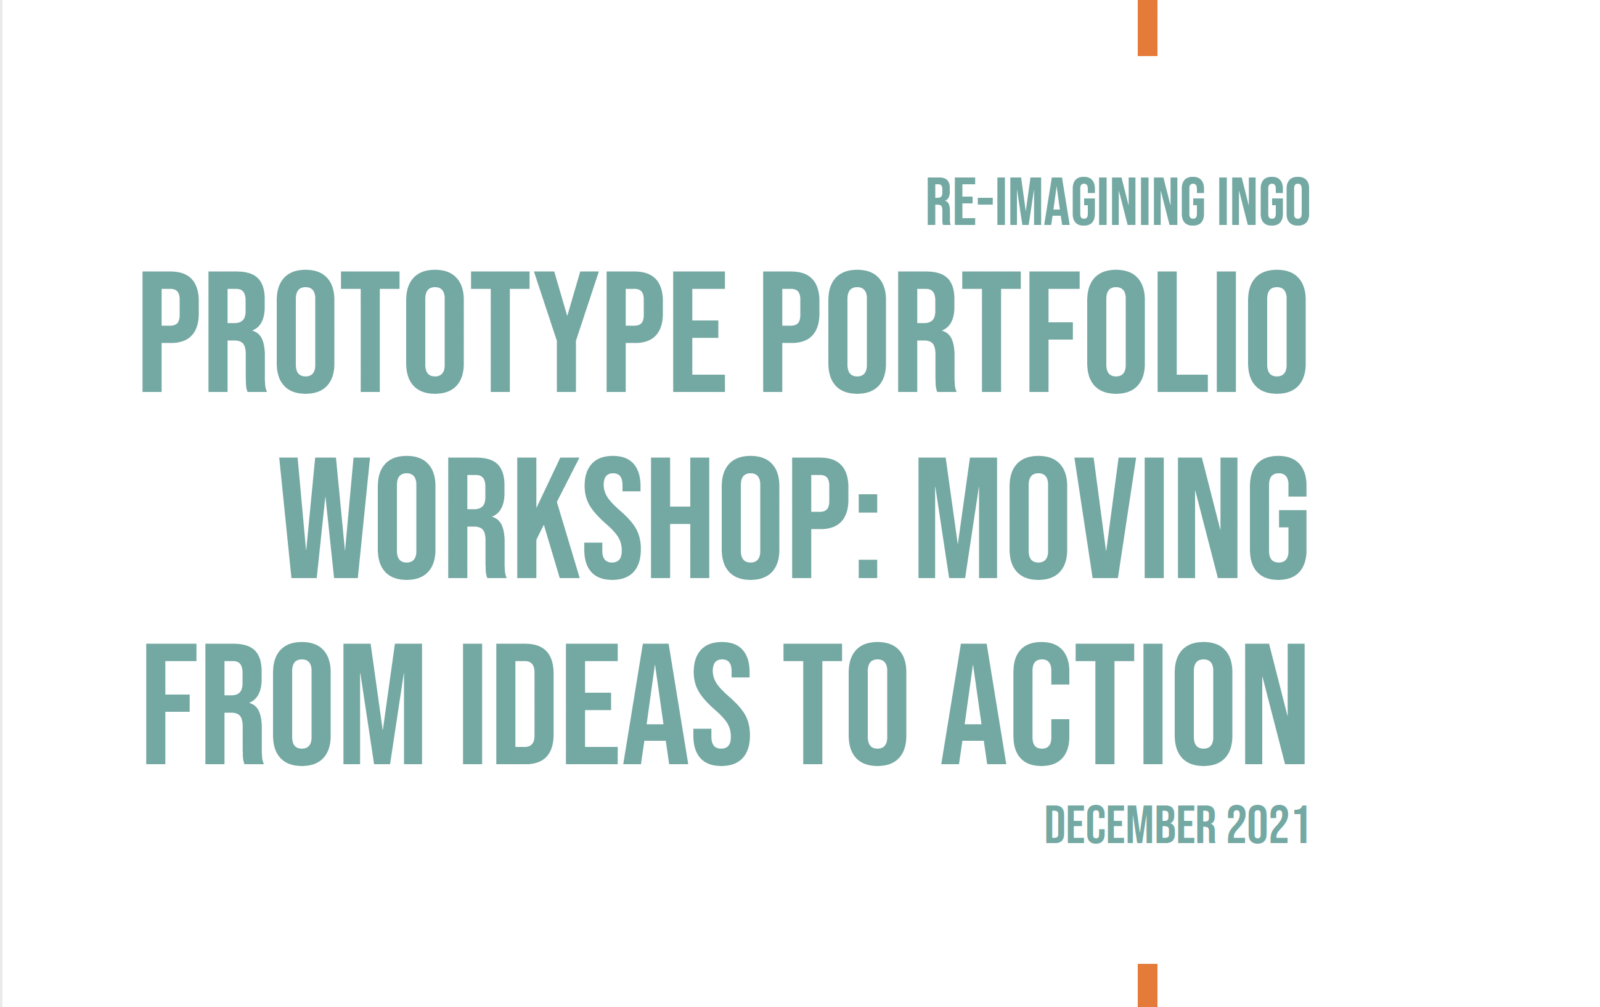 Prototype Portfolio Workshop Report